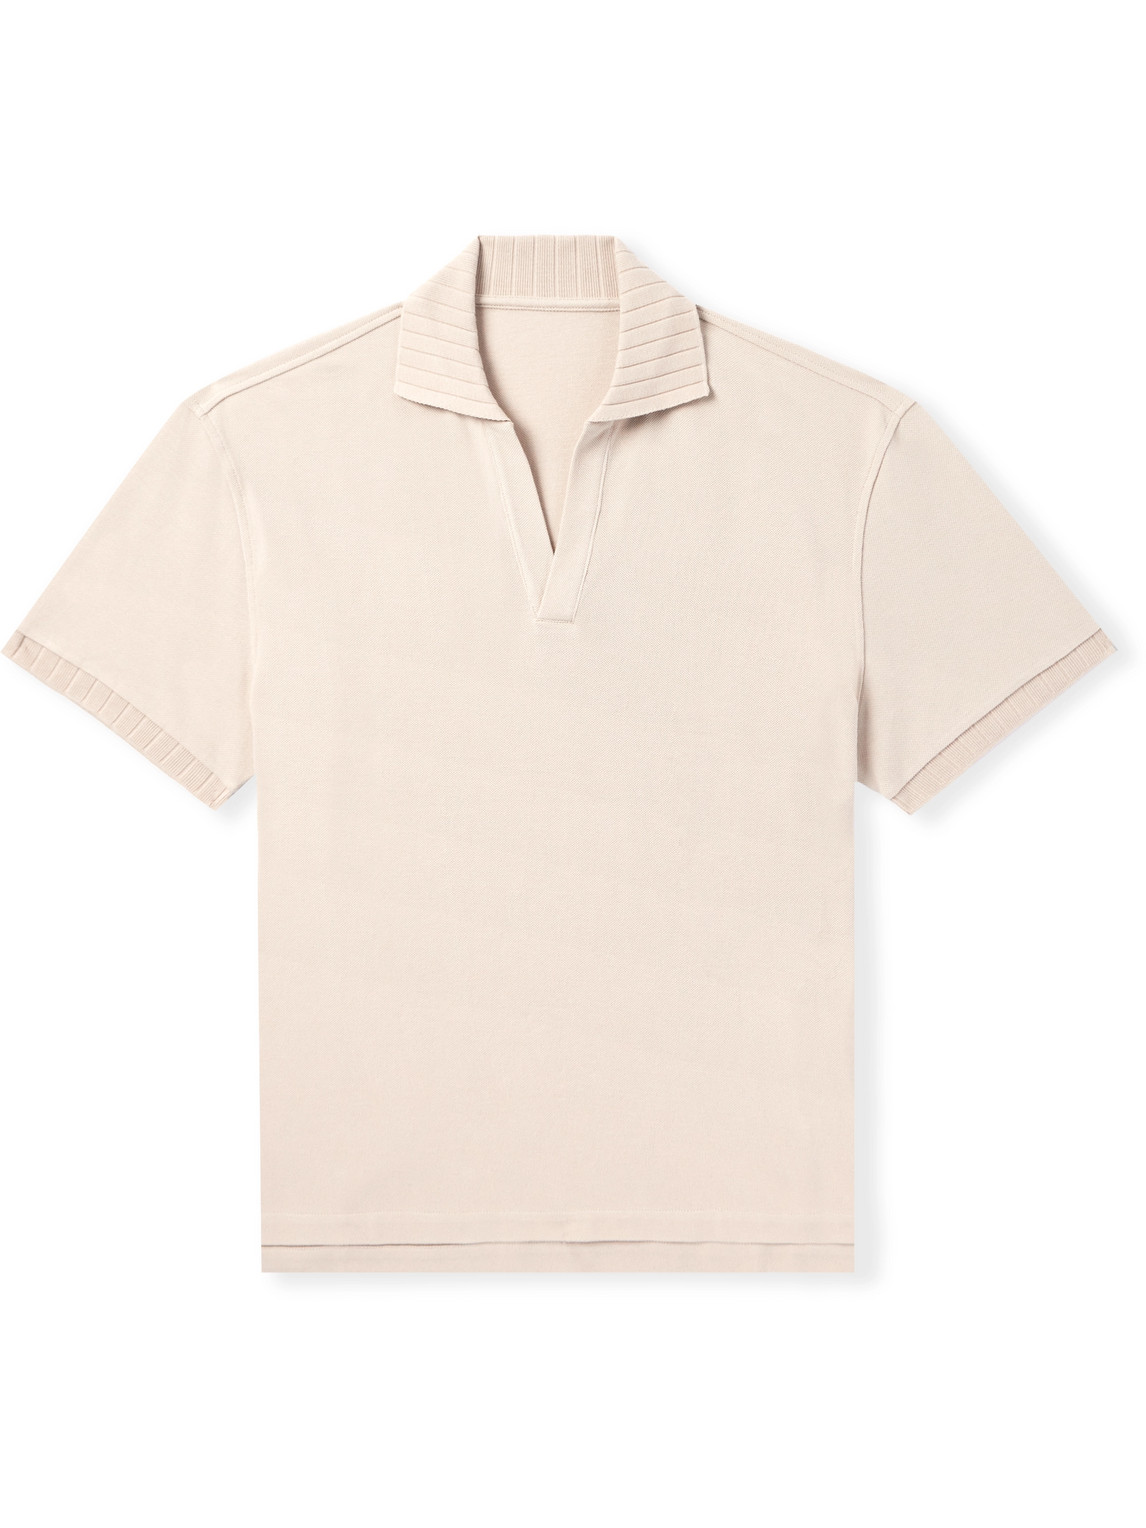 Stòffa Cotton-piquè Polo Shirt In Neutrals